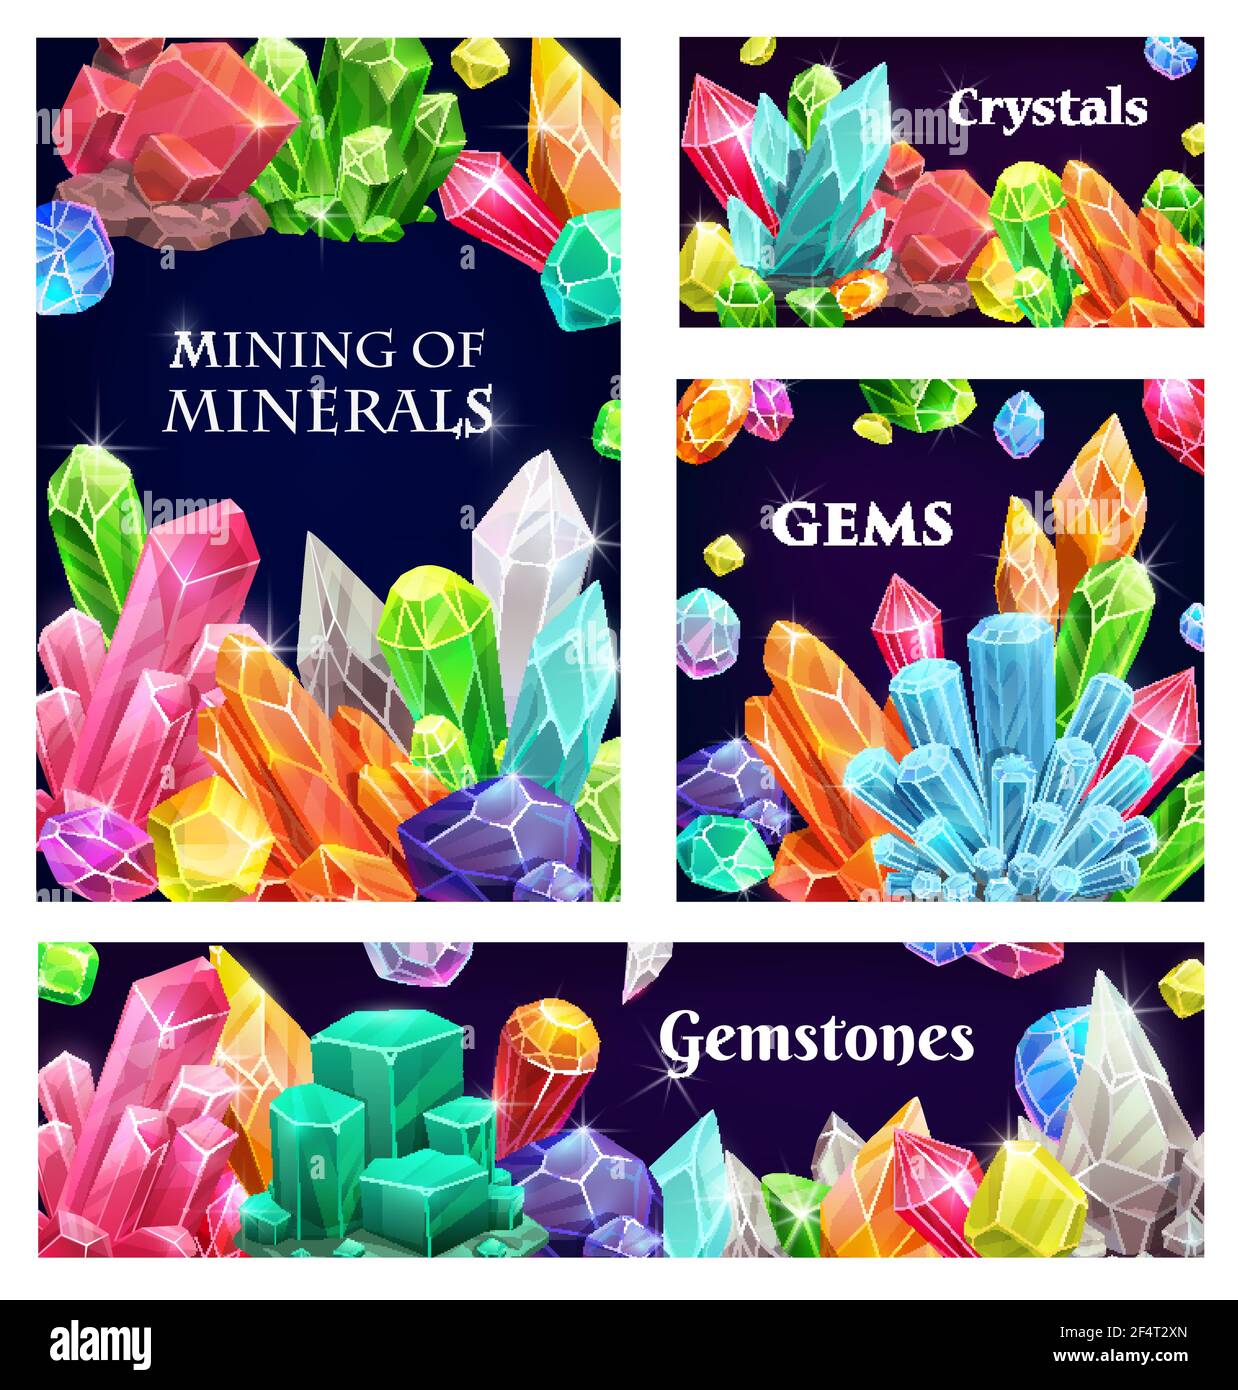 Crystals or gemstones and precious gem stones Vector Image